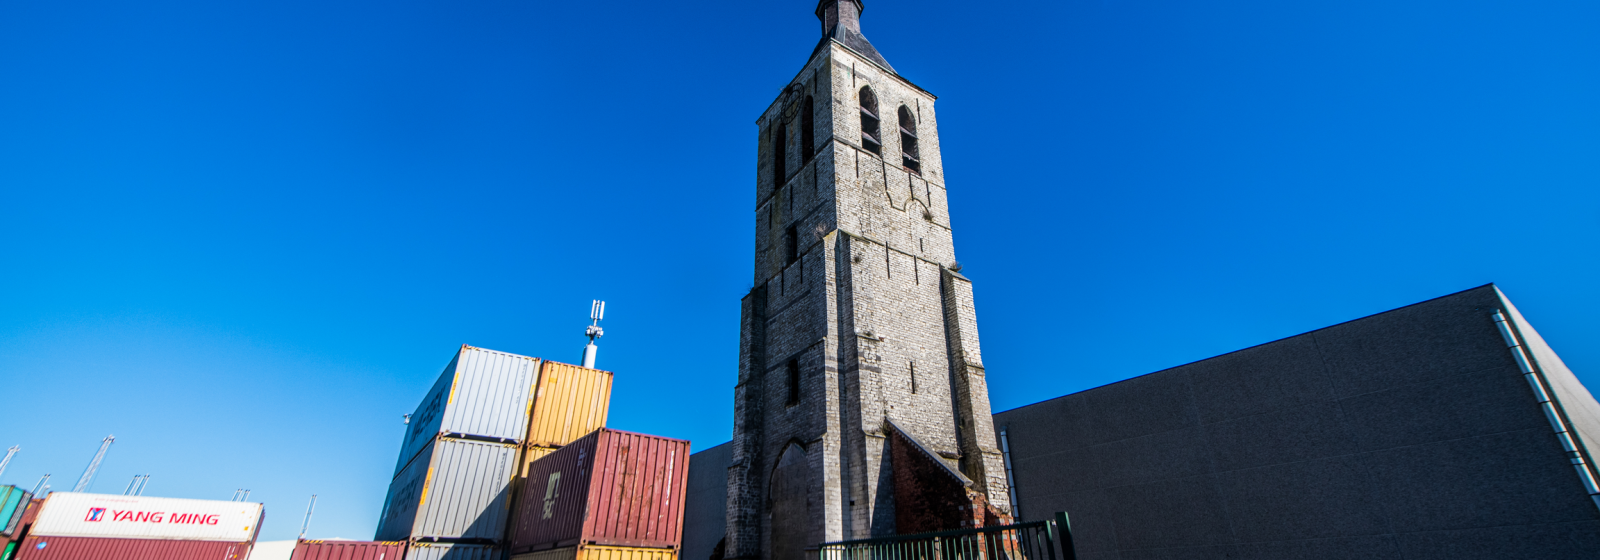 De kerktoren van het verdwenen polderdorp Wilmarsdonk